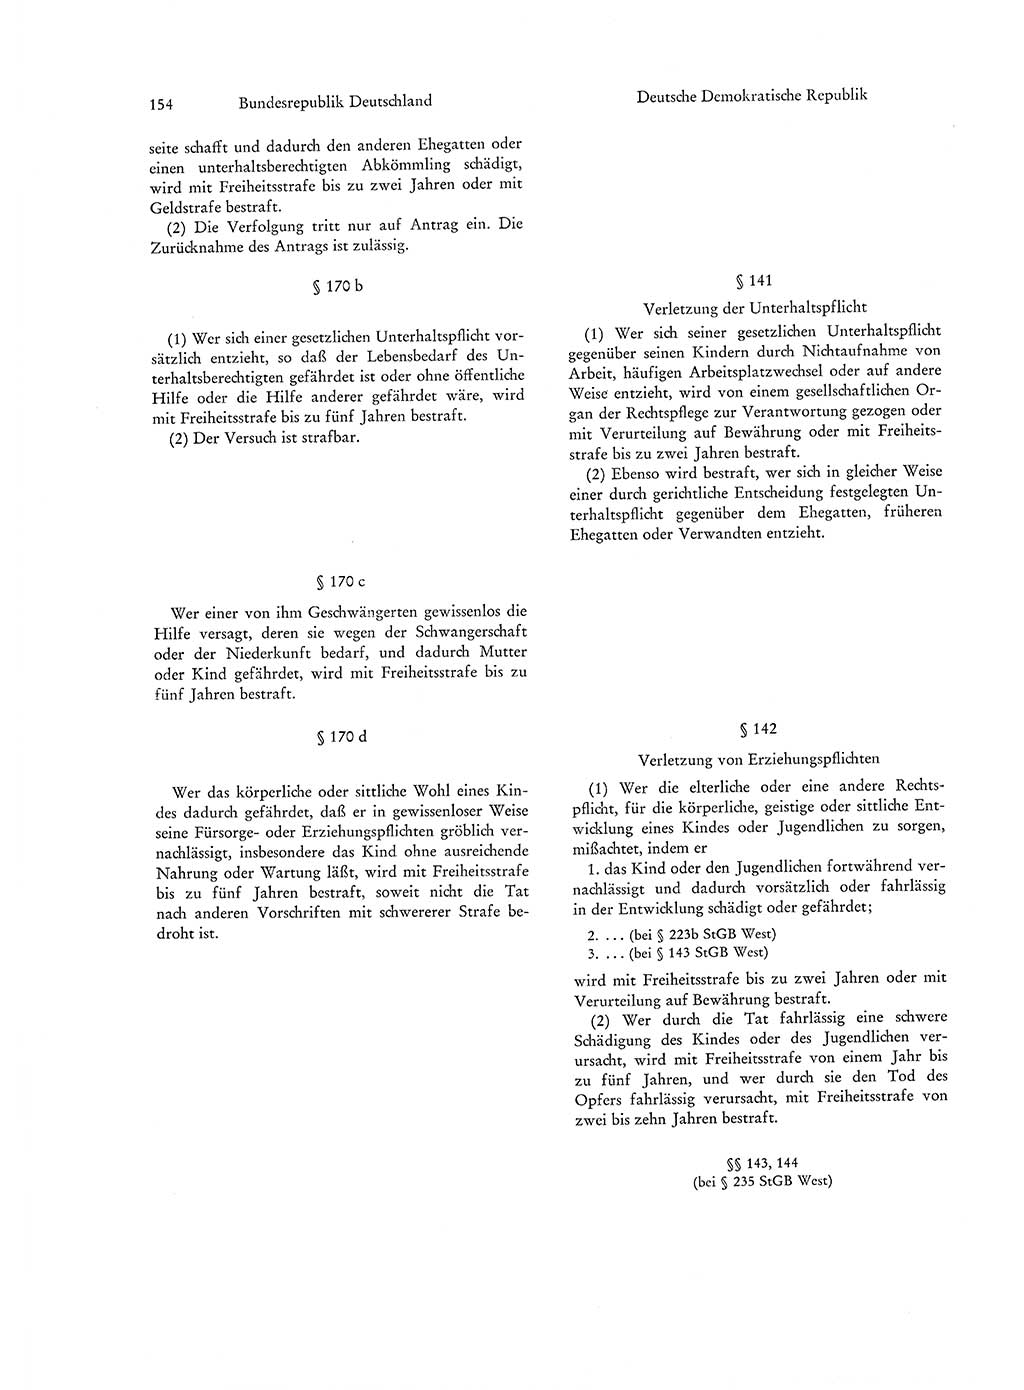 Strafgesetzgebung in Deutschland [Bundesrepublik Deutschland (BRD) und Deutsche Demokratische Republik (DDR)] 1972, Seite 154 (Str.-Ges. Dtl. StGB BRD DDR 1972, S. 154)